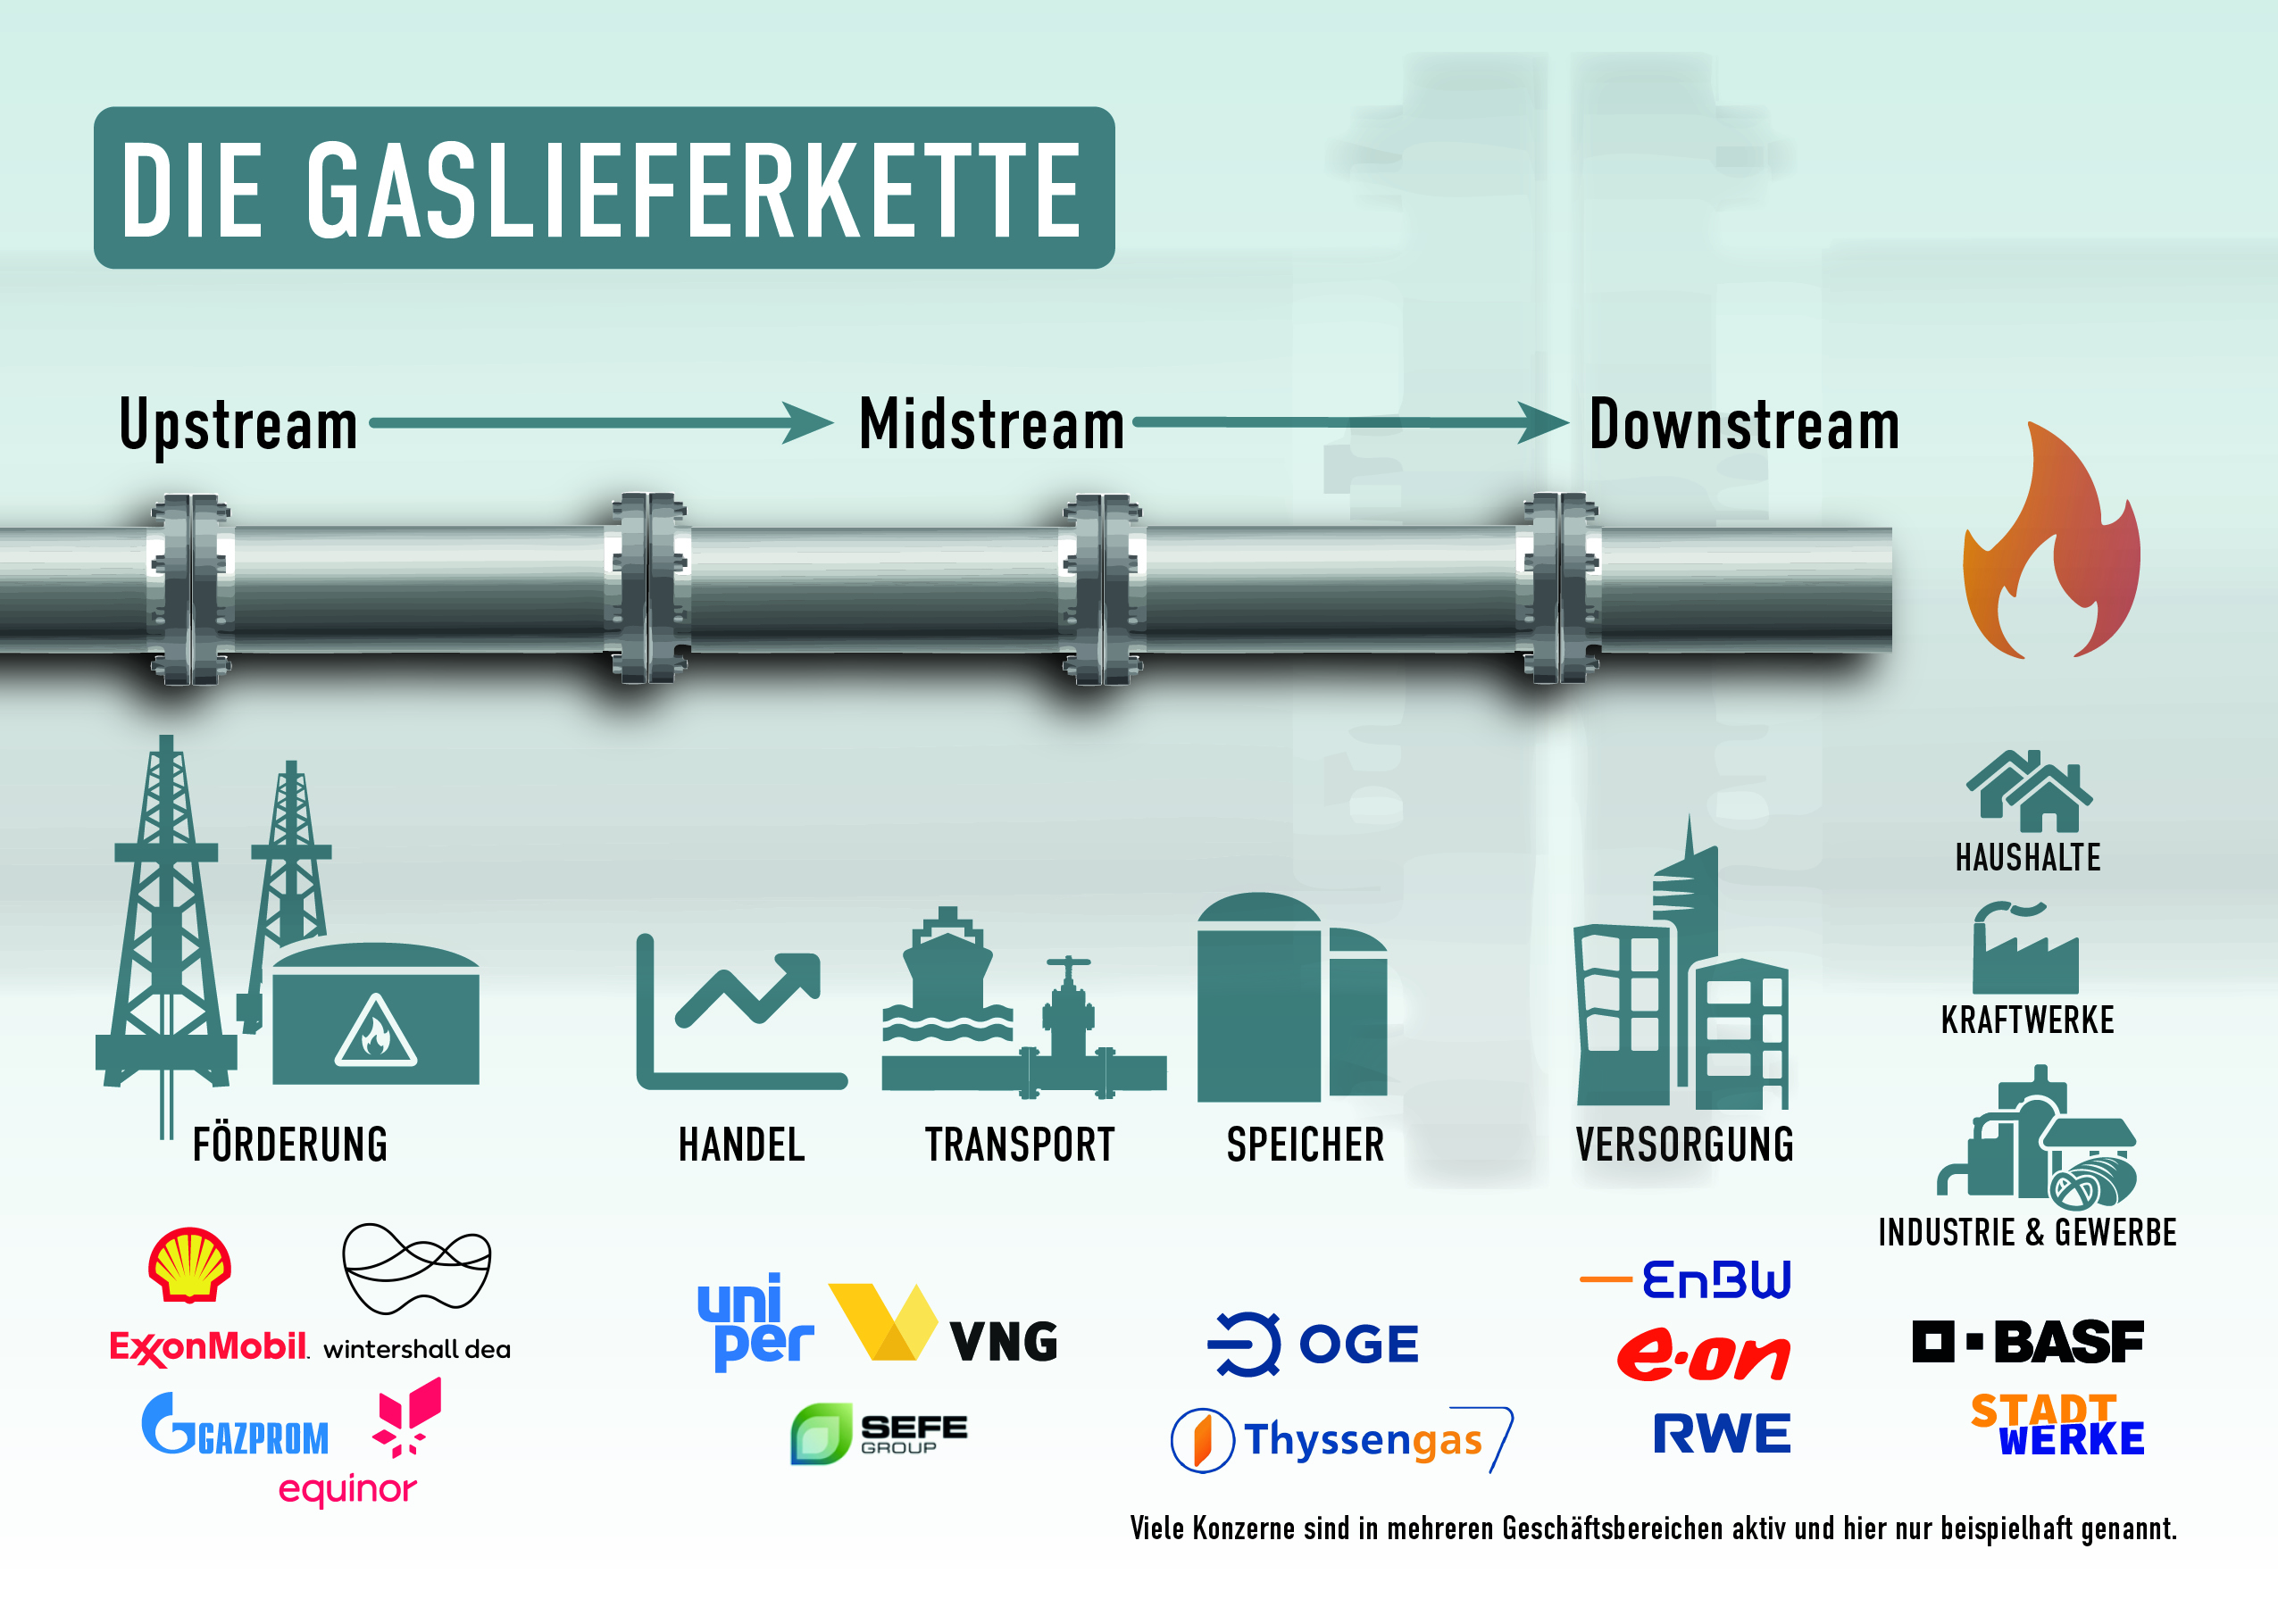 Gaslieferkette der Energiekonzerne in Deutschland